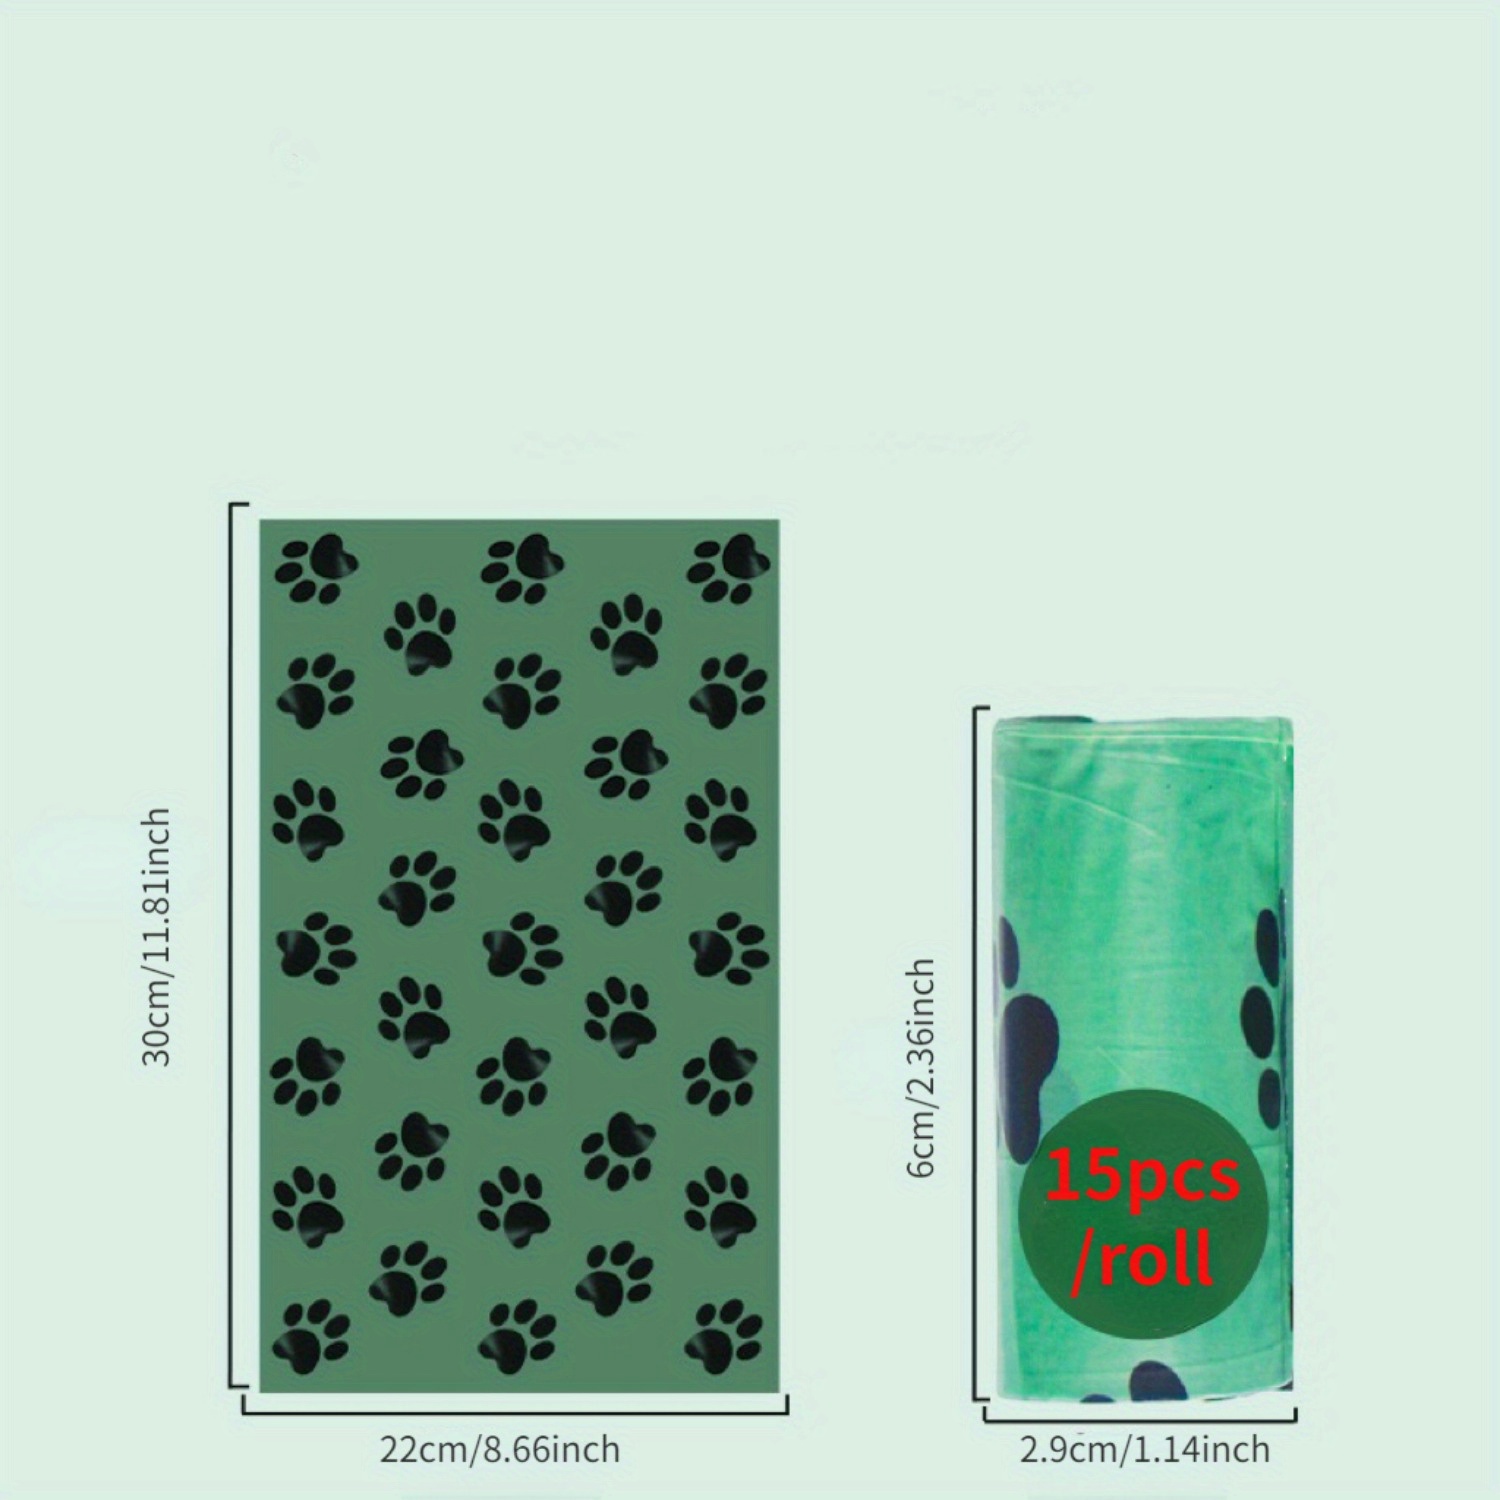 405 Bolsas Caca Perro Biodegradable Y Extra Gruesas, A Prueba De Fugas 27  Rollos - 405 Unidades con Ofertas en Carrefour